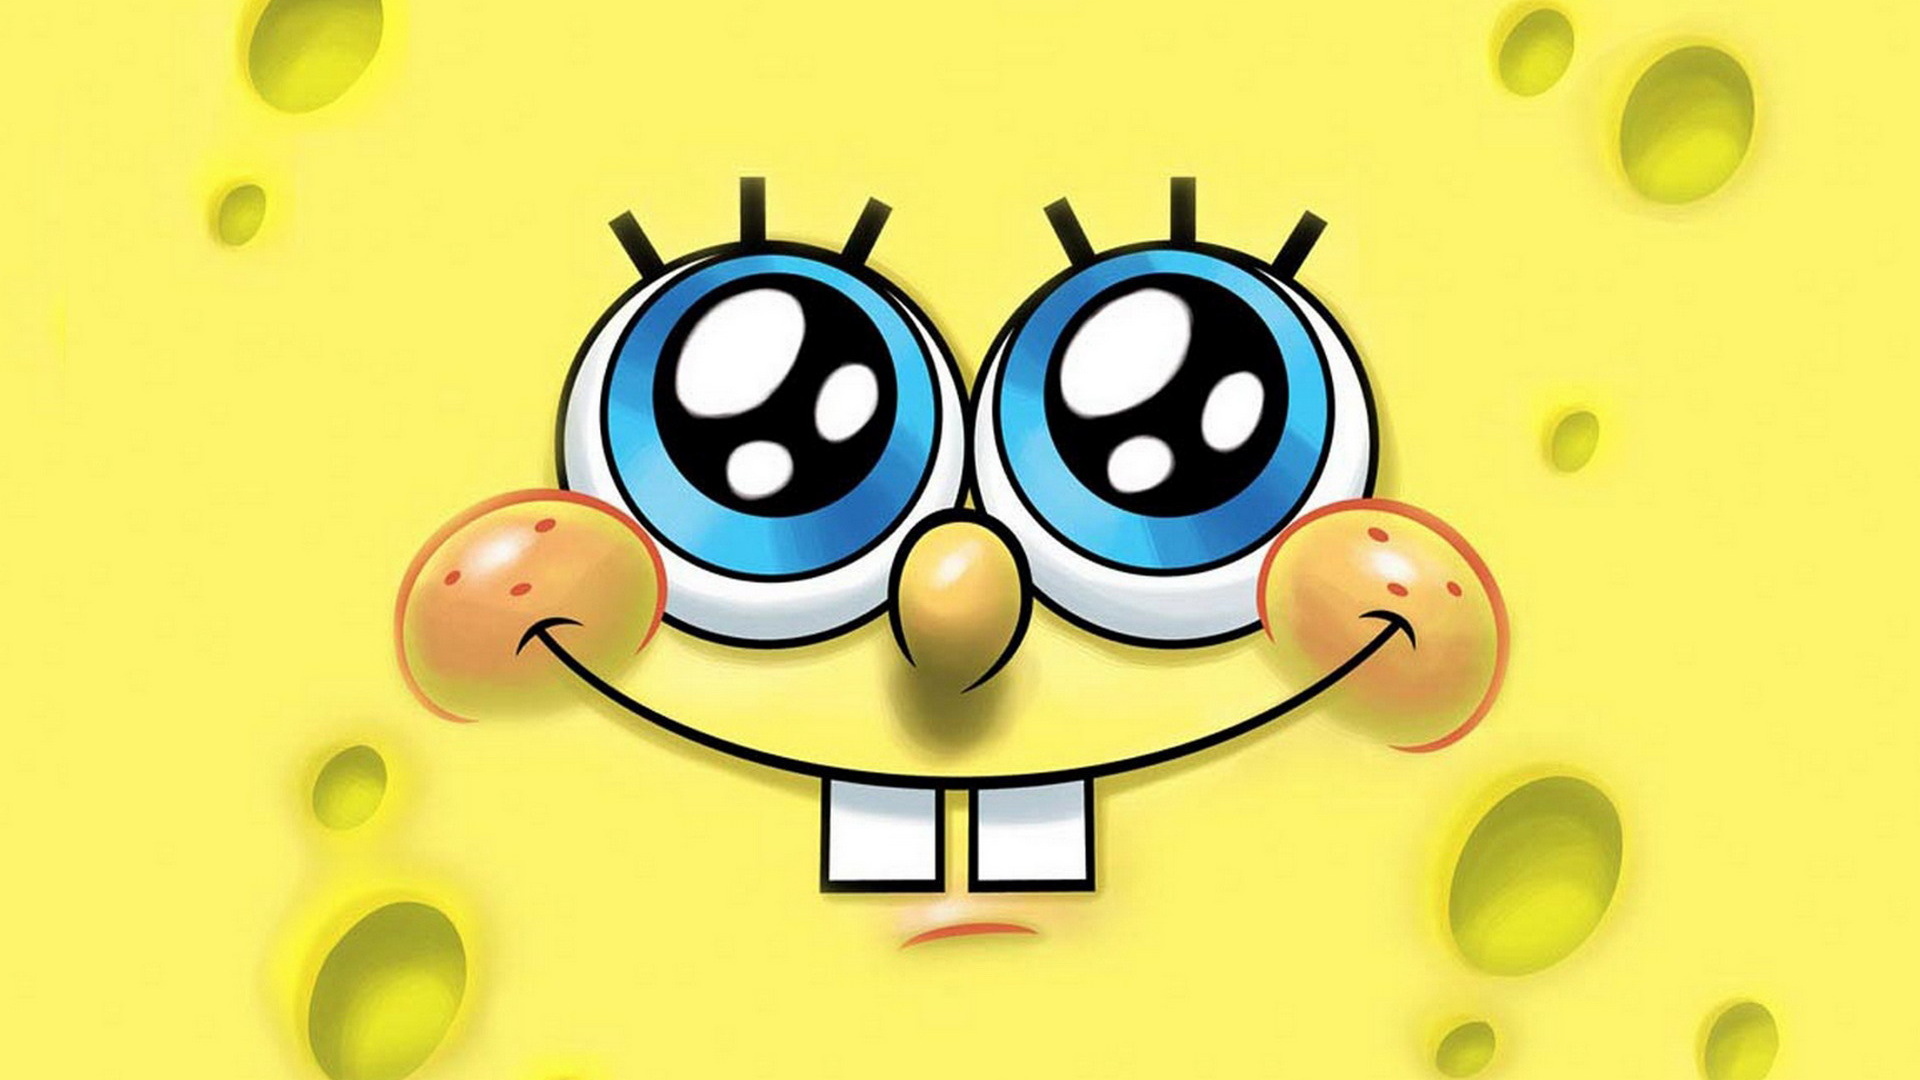 Spongebob Squarepants Face Pictures Background HD